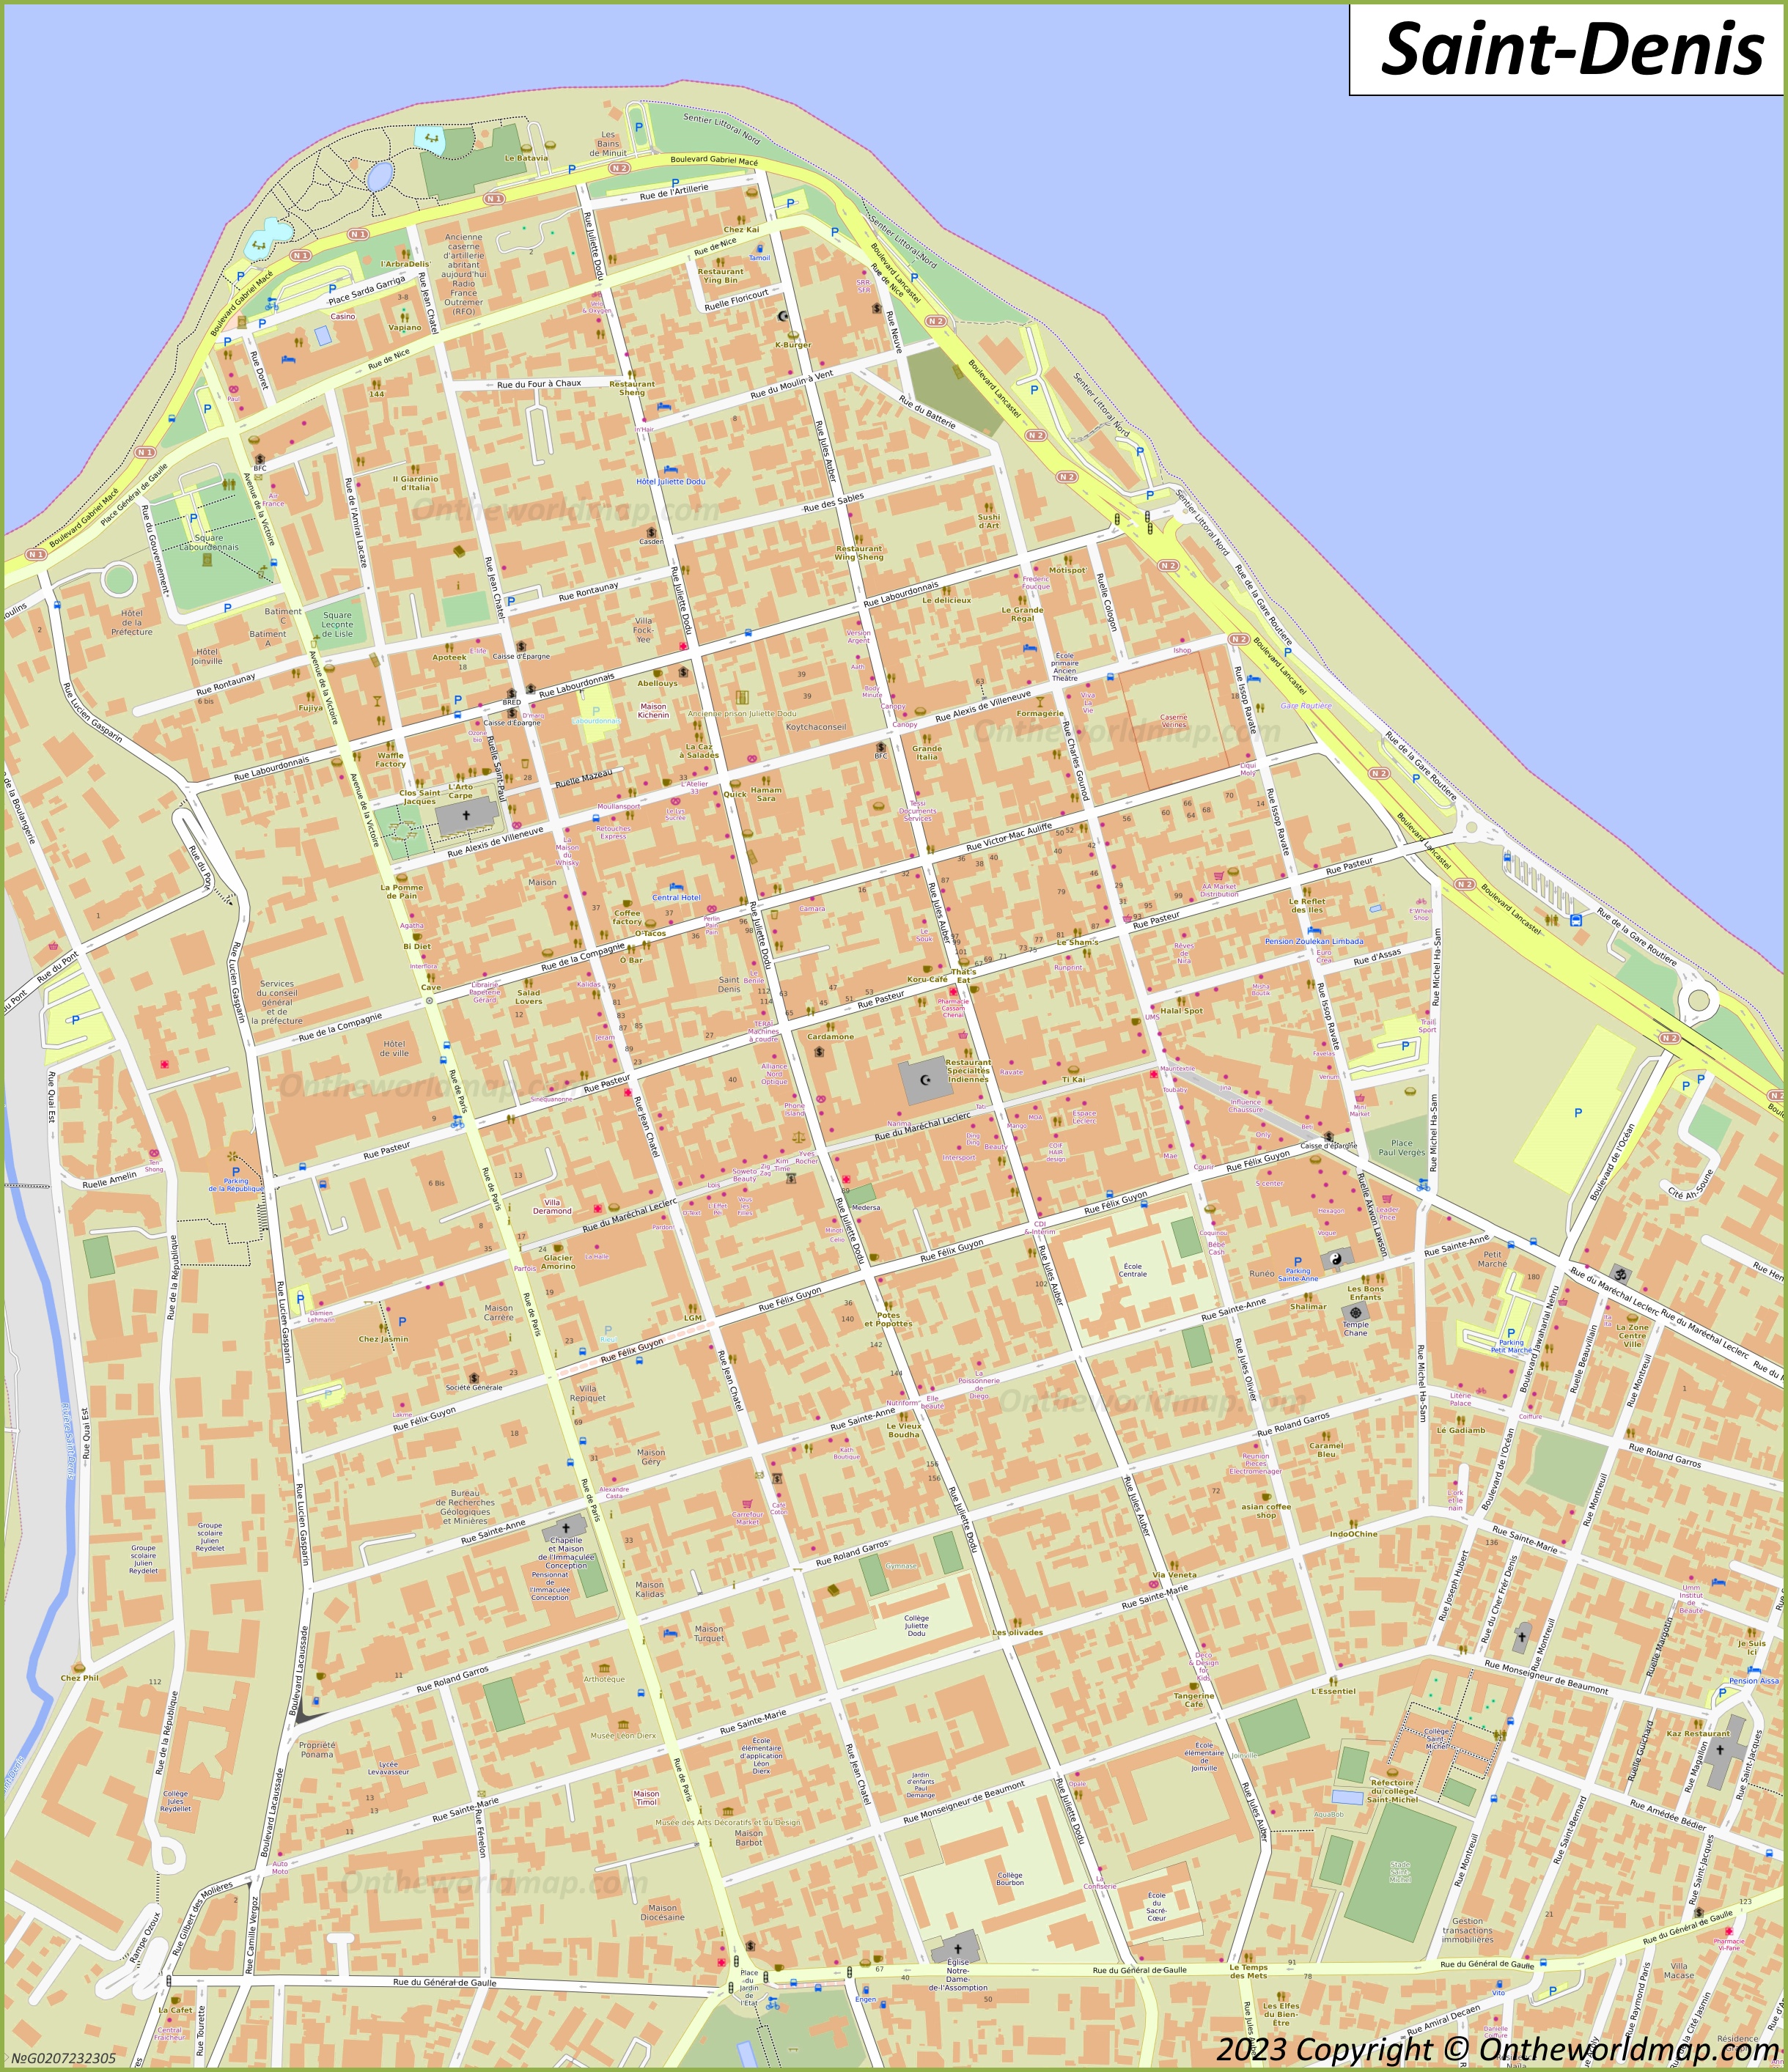 Saint-Denis City Centre Map